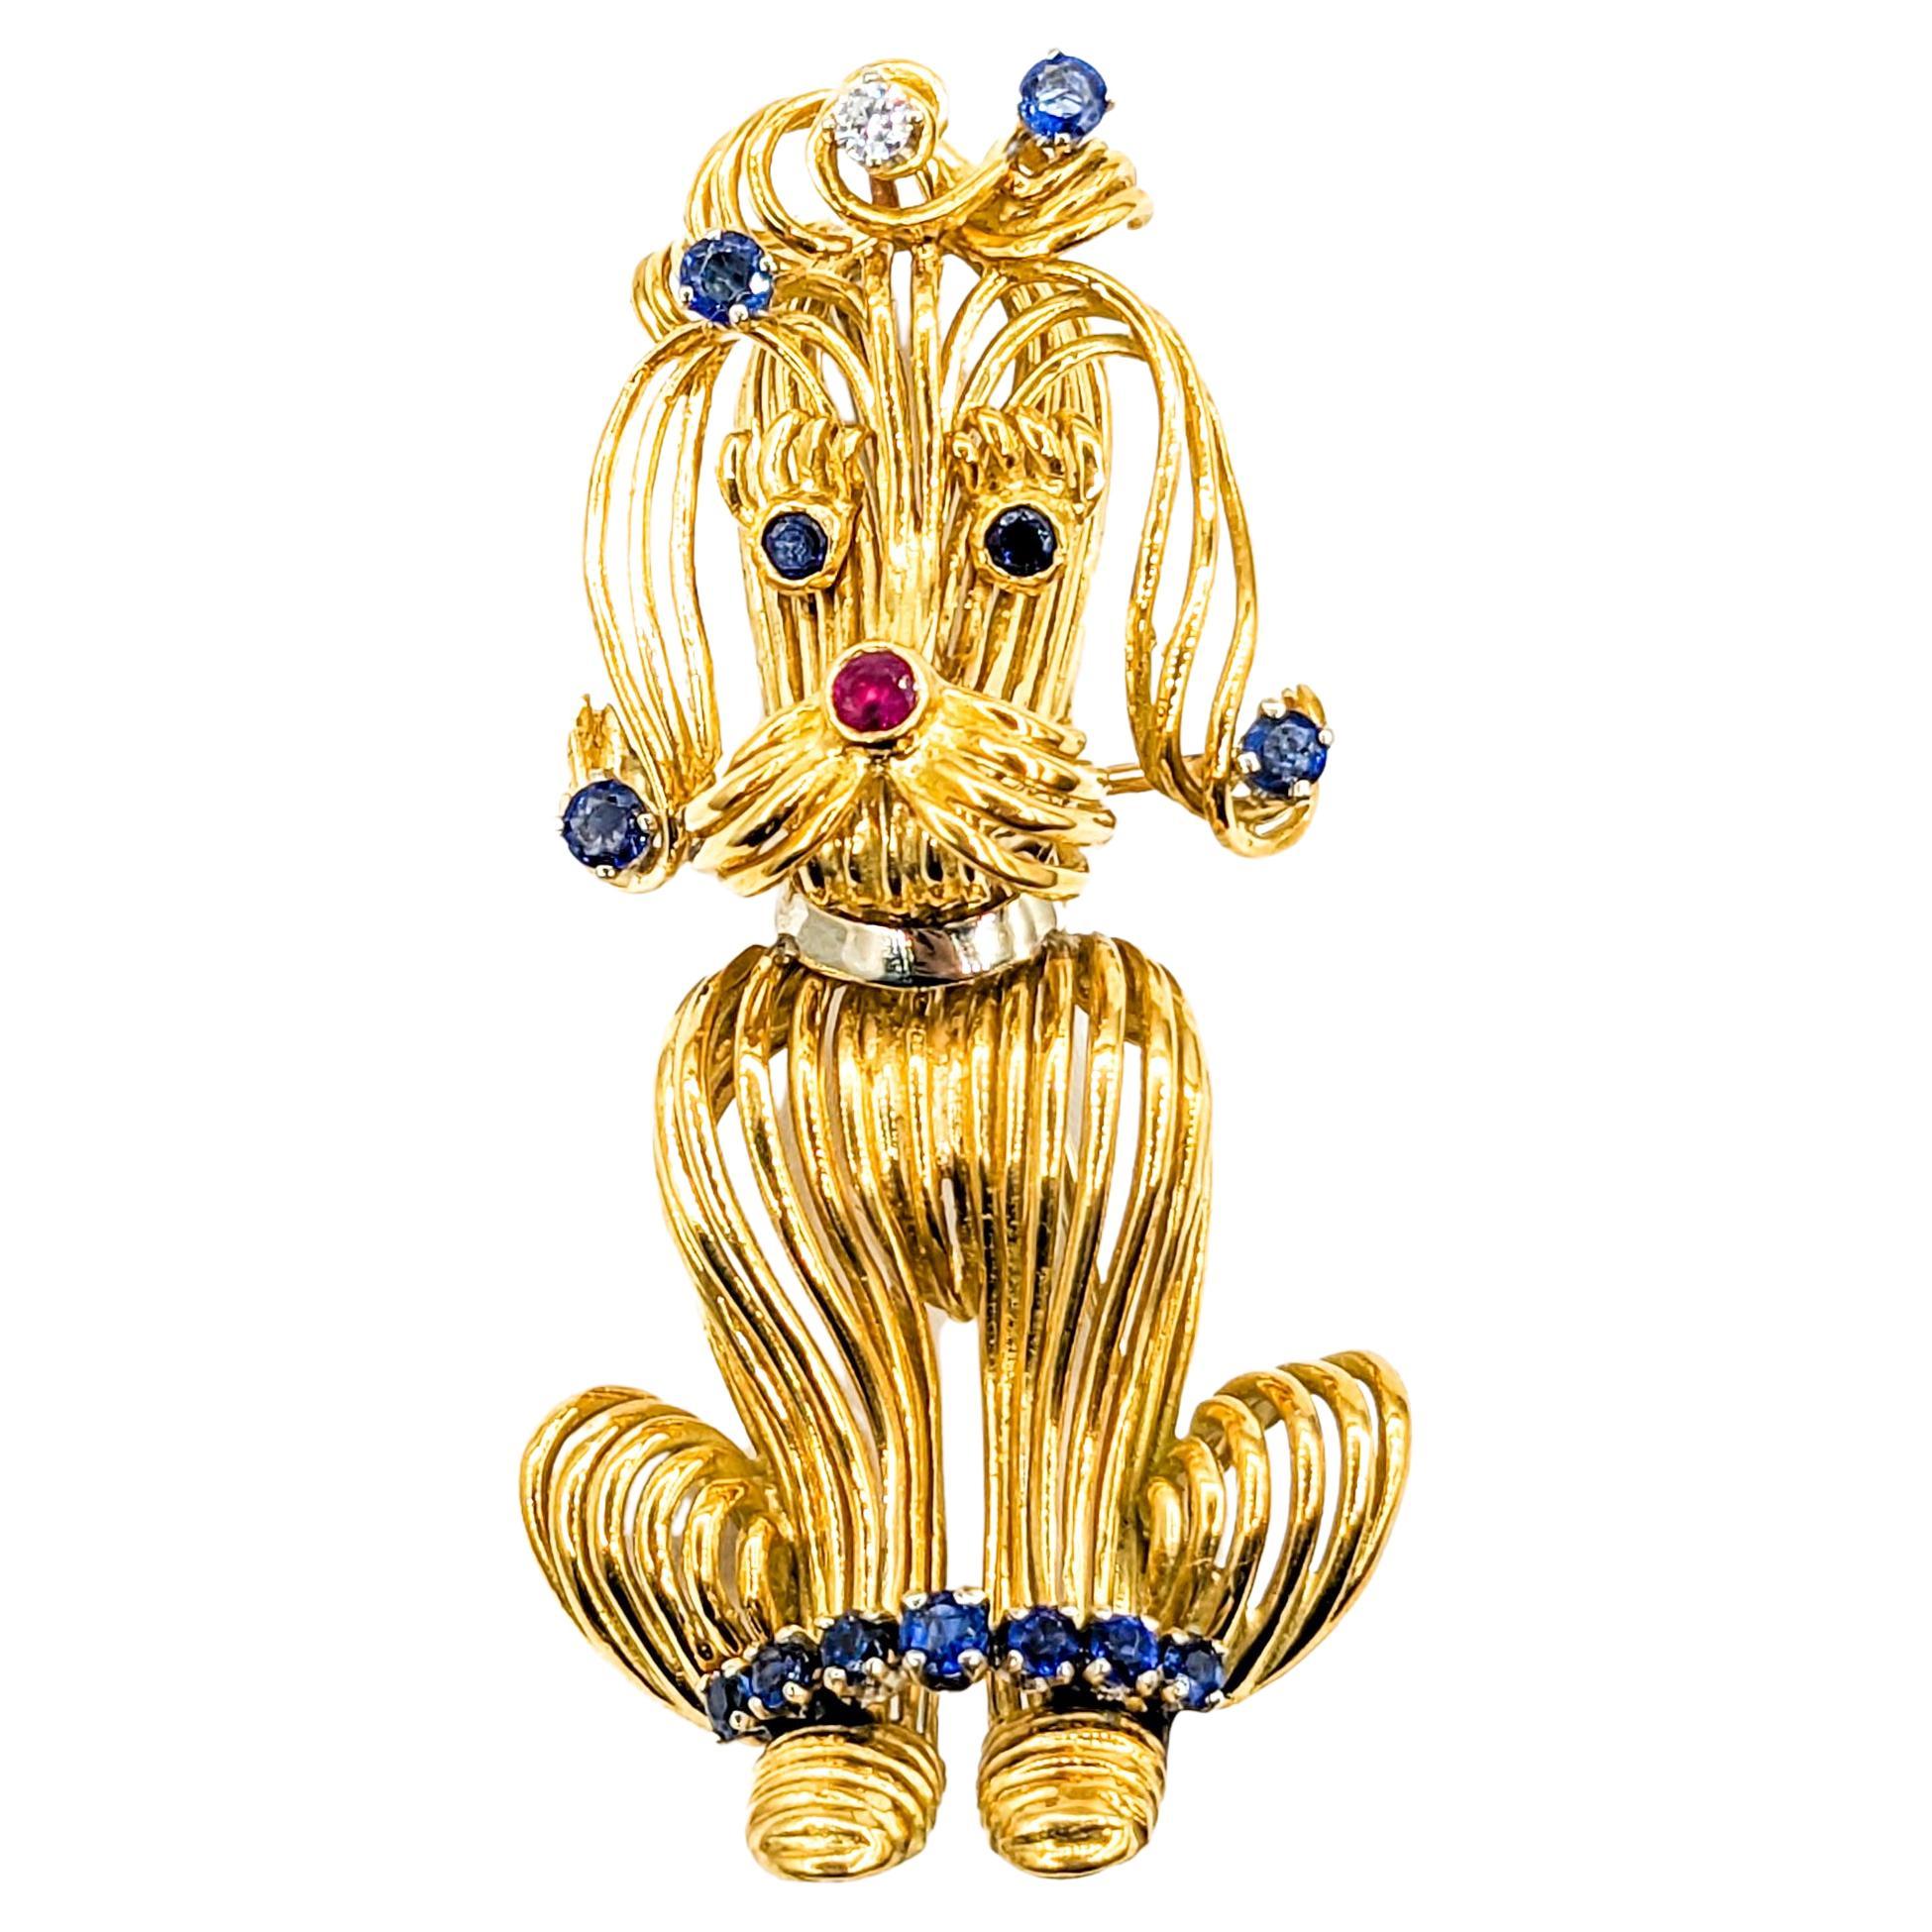 Darling mi-siècle broche chien caniche avec saphirs, rubis et diamants 18 carats